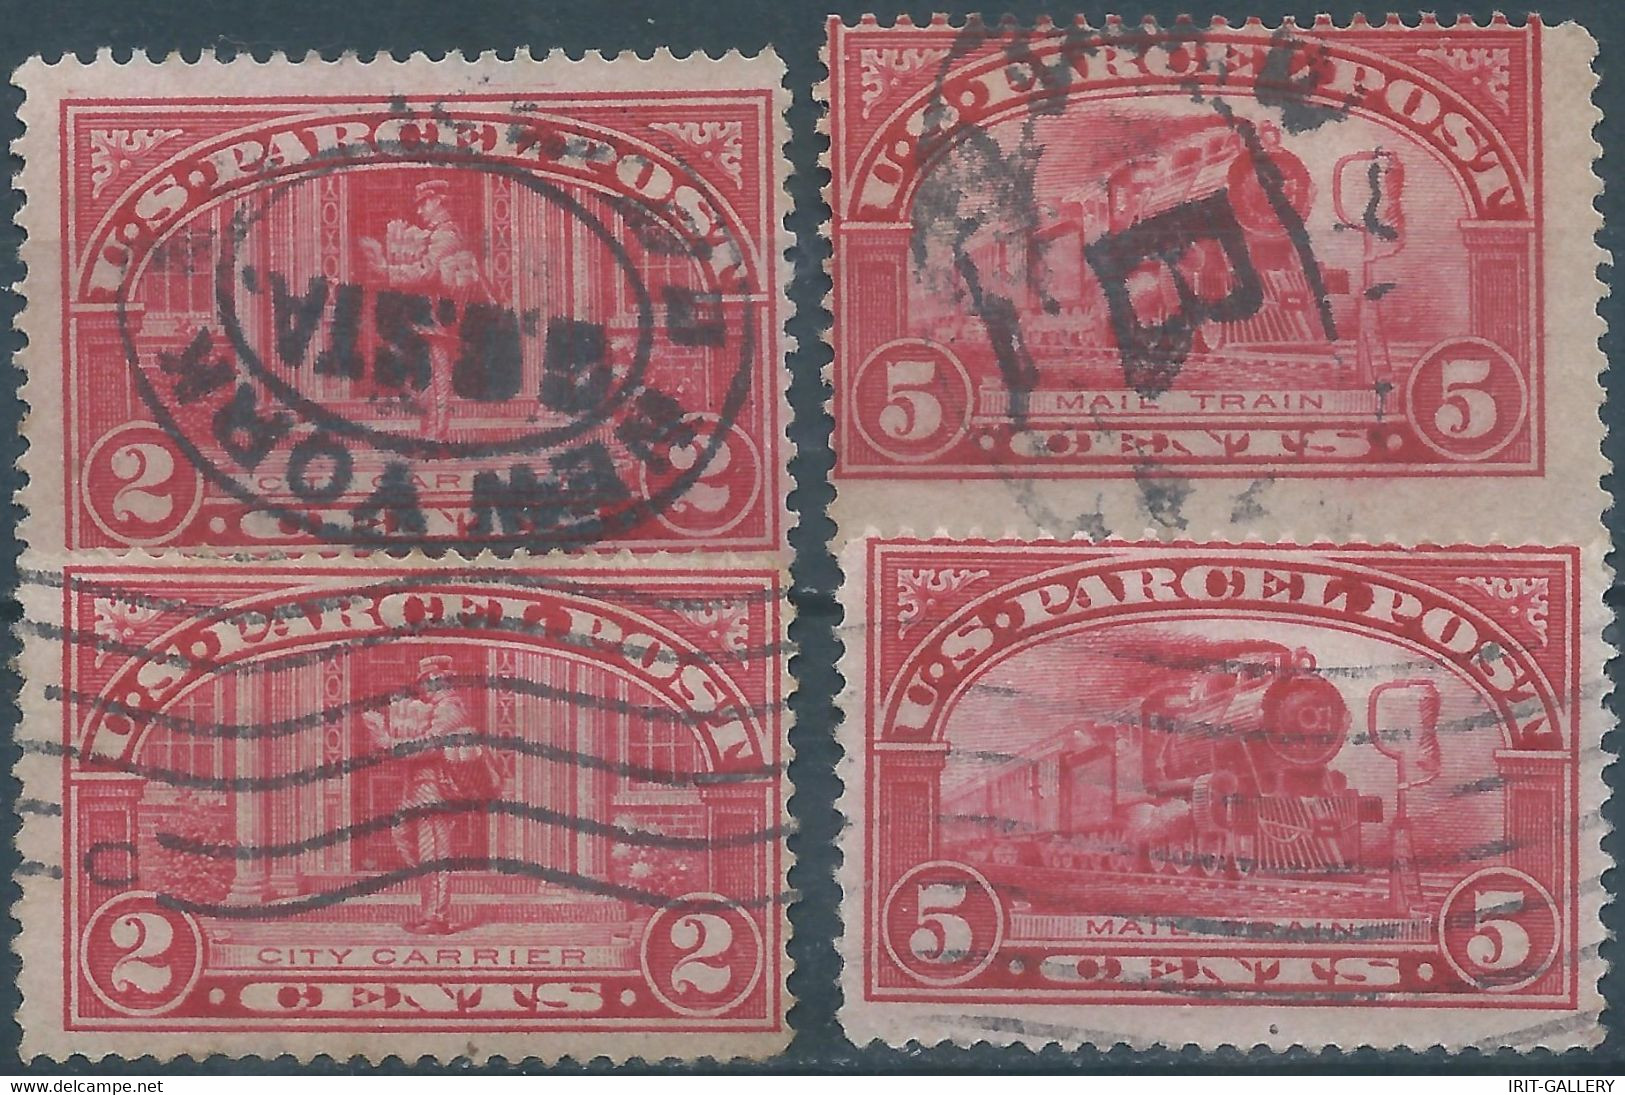 340-United States,U.S.A,Revenue Stamps PARCEL POST,2&5c,Used - Paquetes & Encomiendas